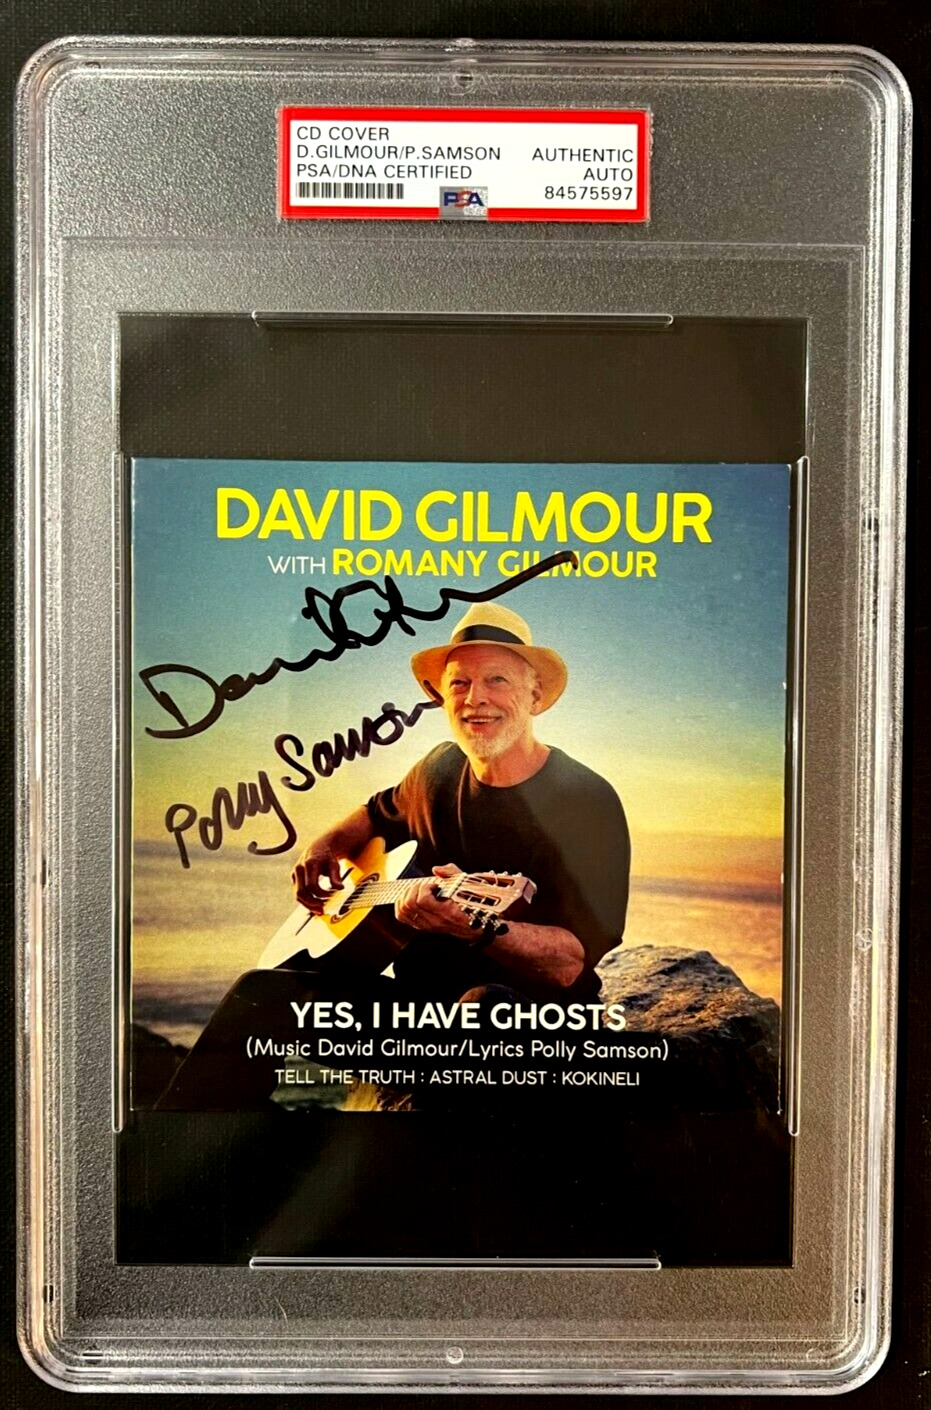 David Gilmour & Samson Signed Autographed Cd Cover Pink Floyd Psa Slabbed Coa